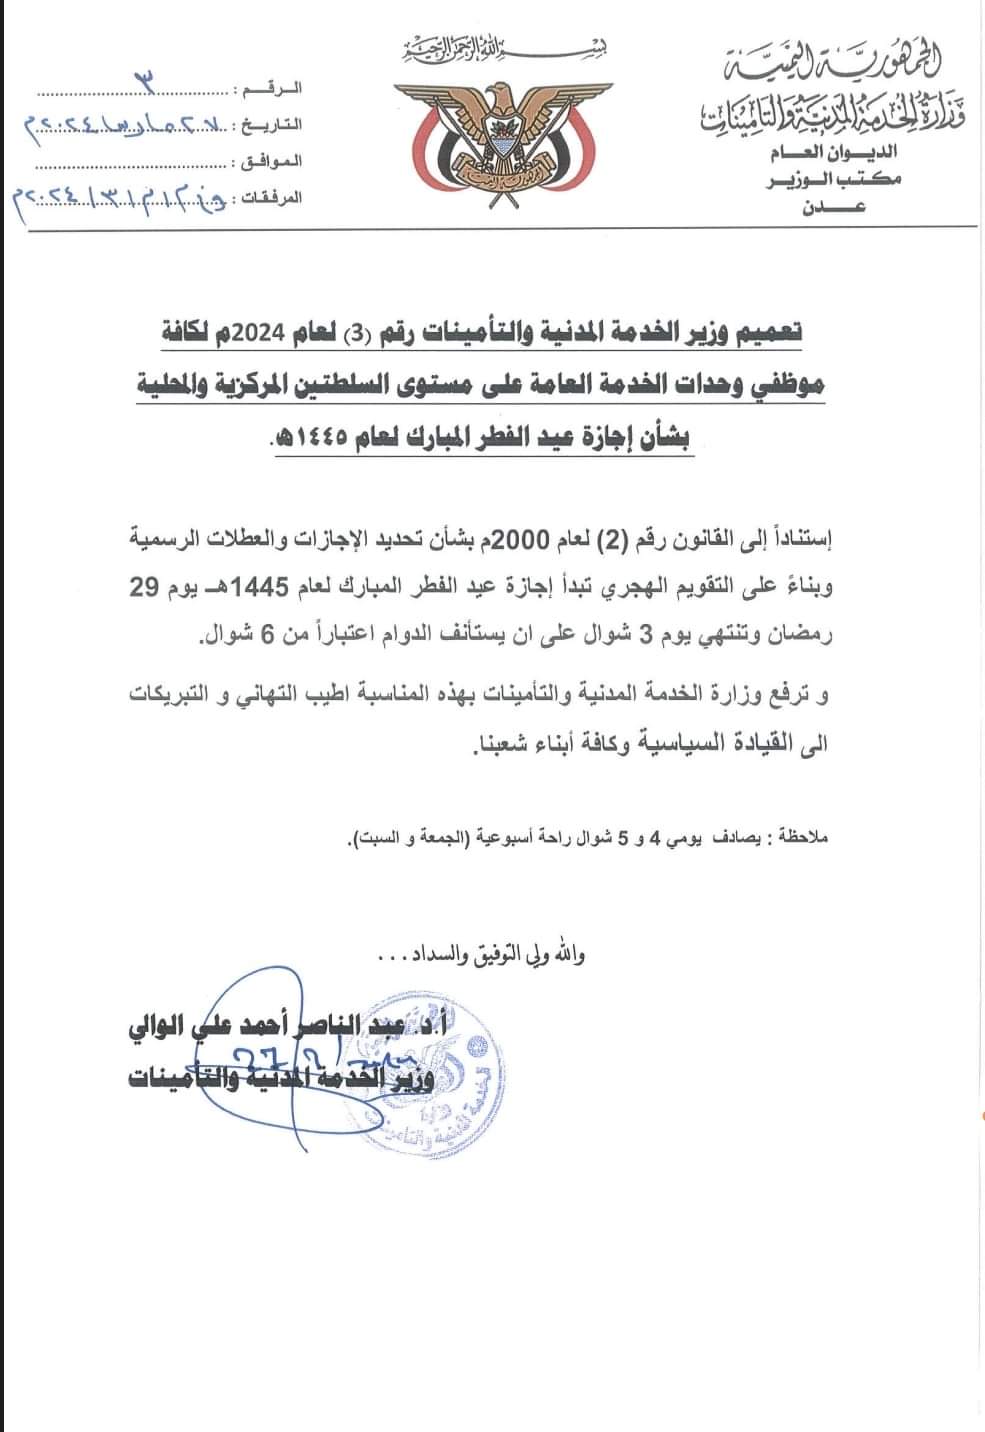 وزارة الخدمة المدنية تُعلن موعد إجازة عيد الفطر